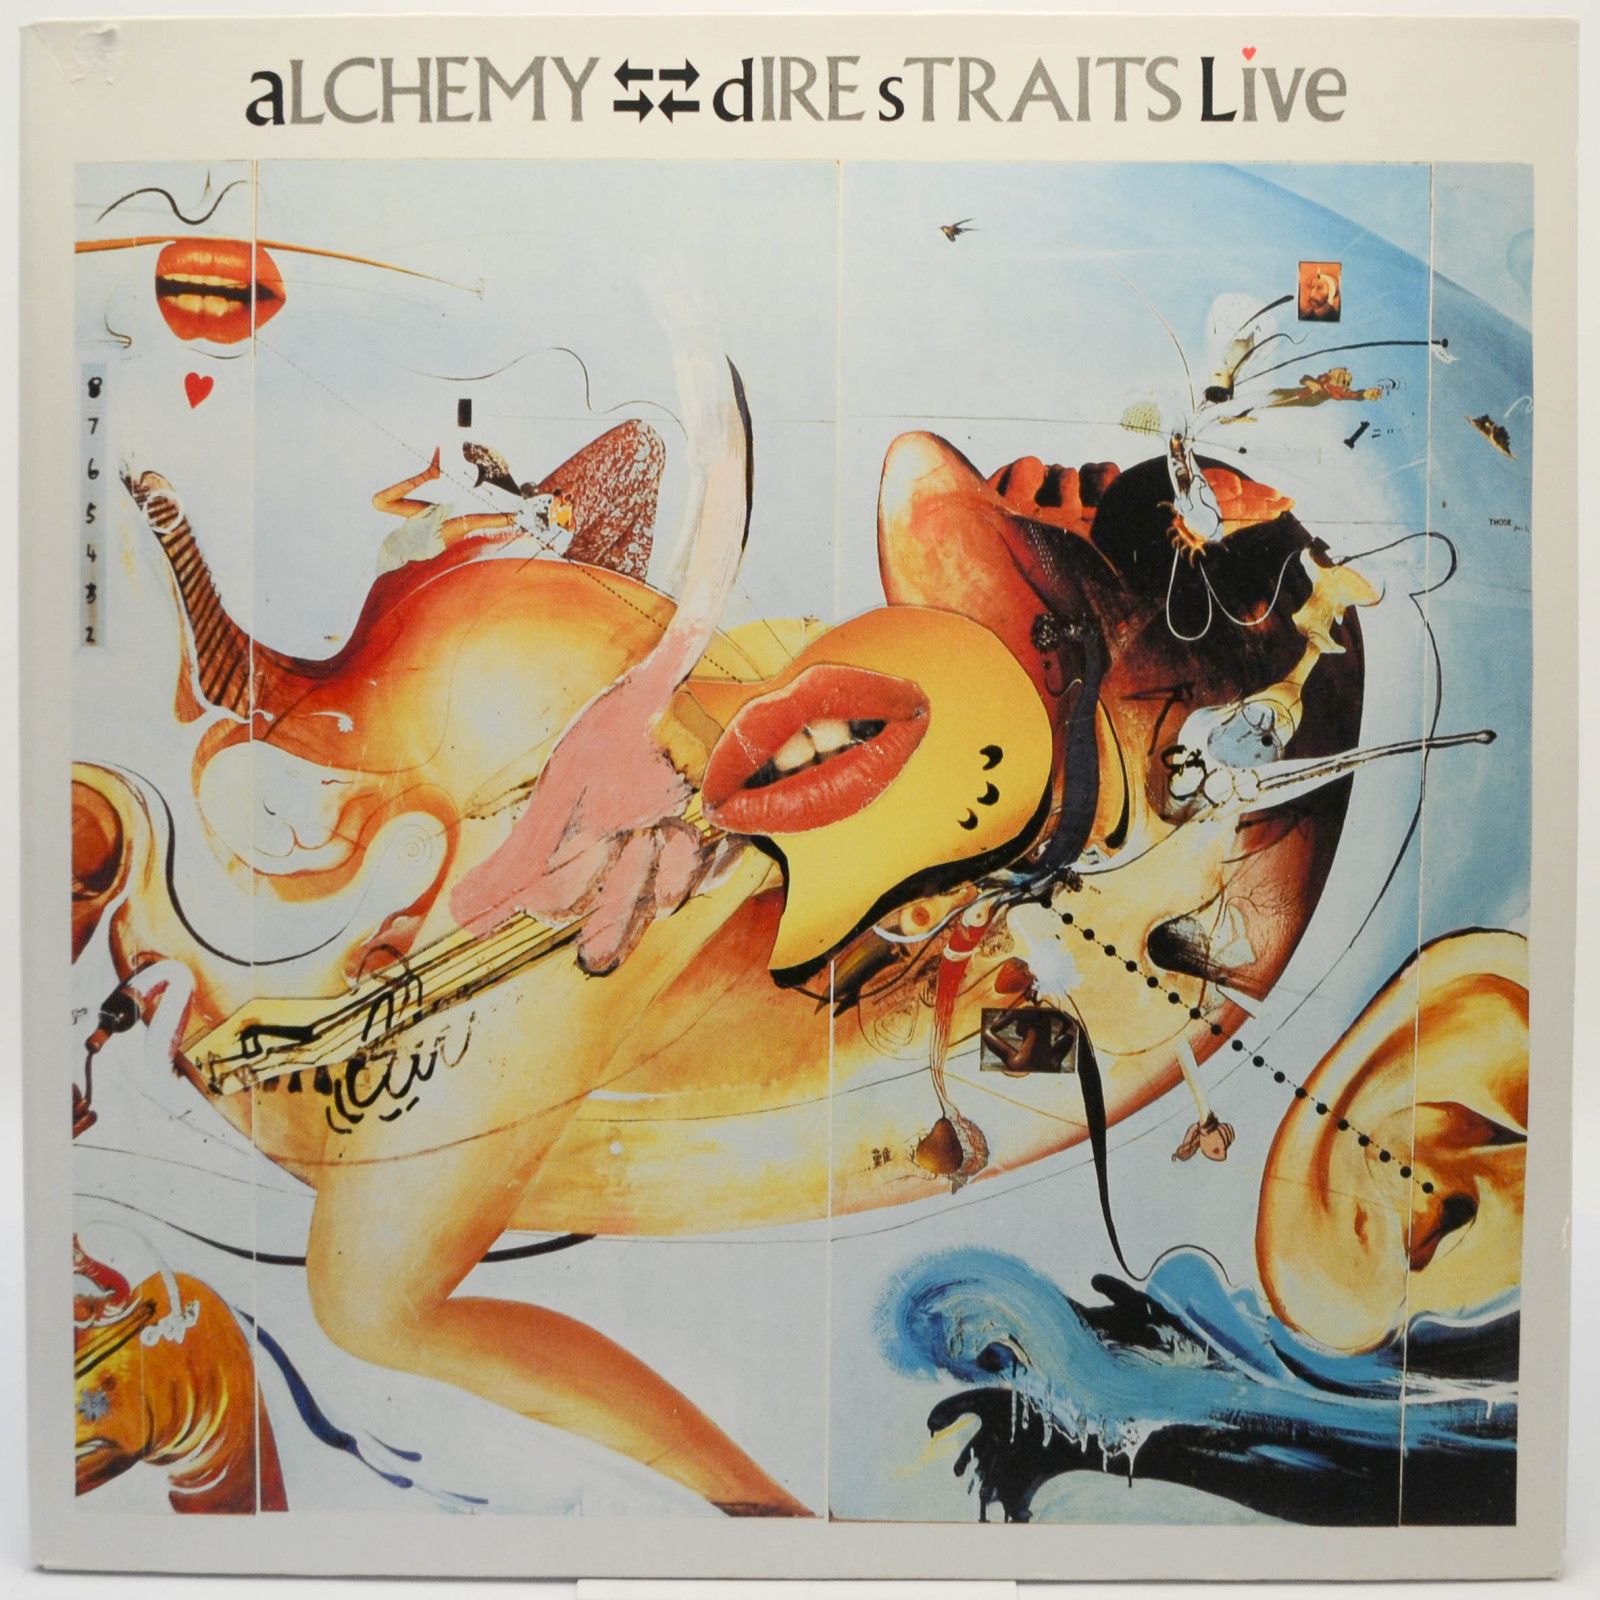 Dire Straits — Alchemy - Dire Straits Live (2LP), 1984